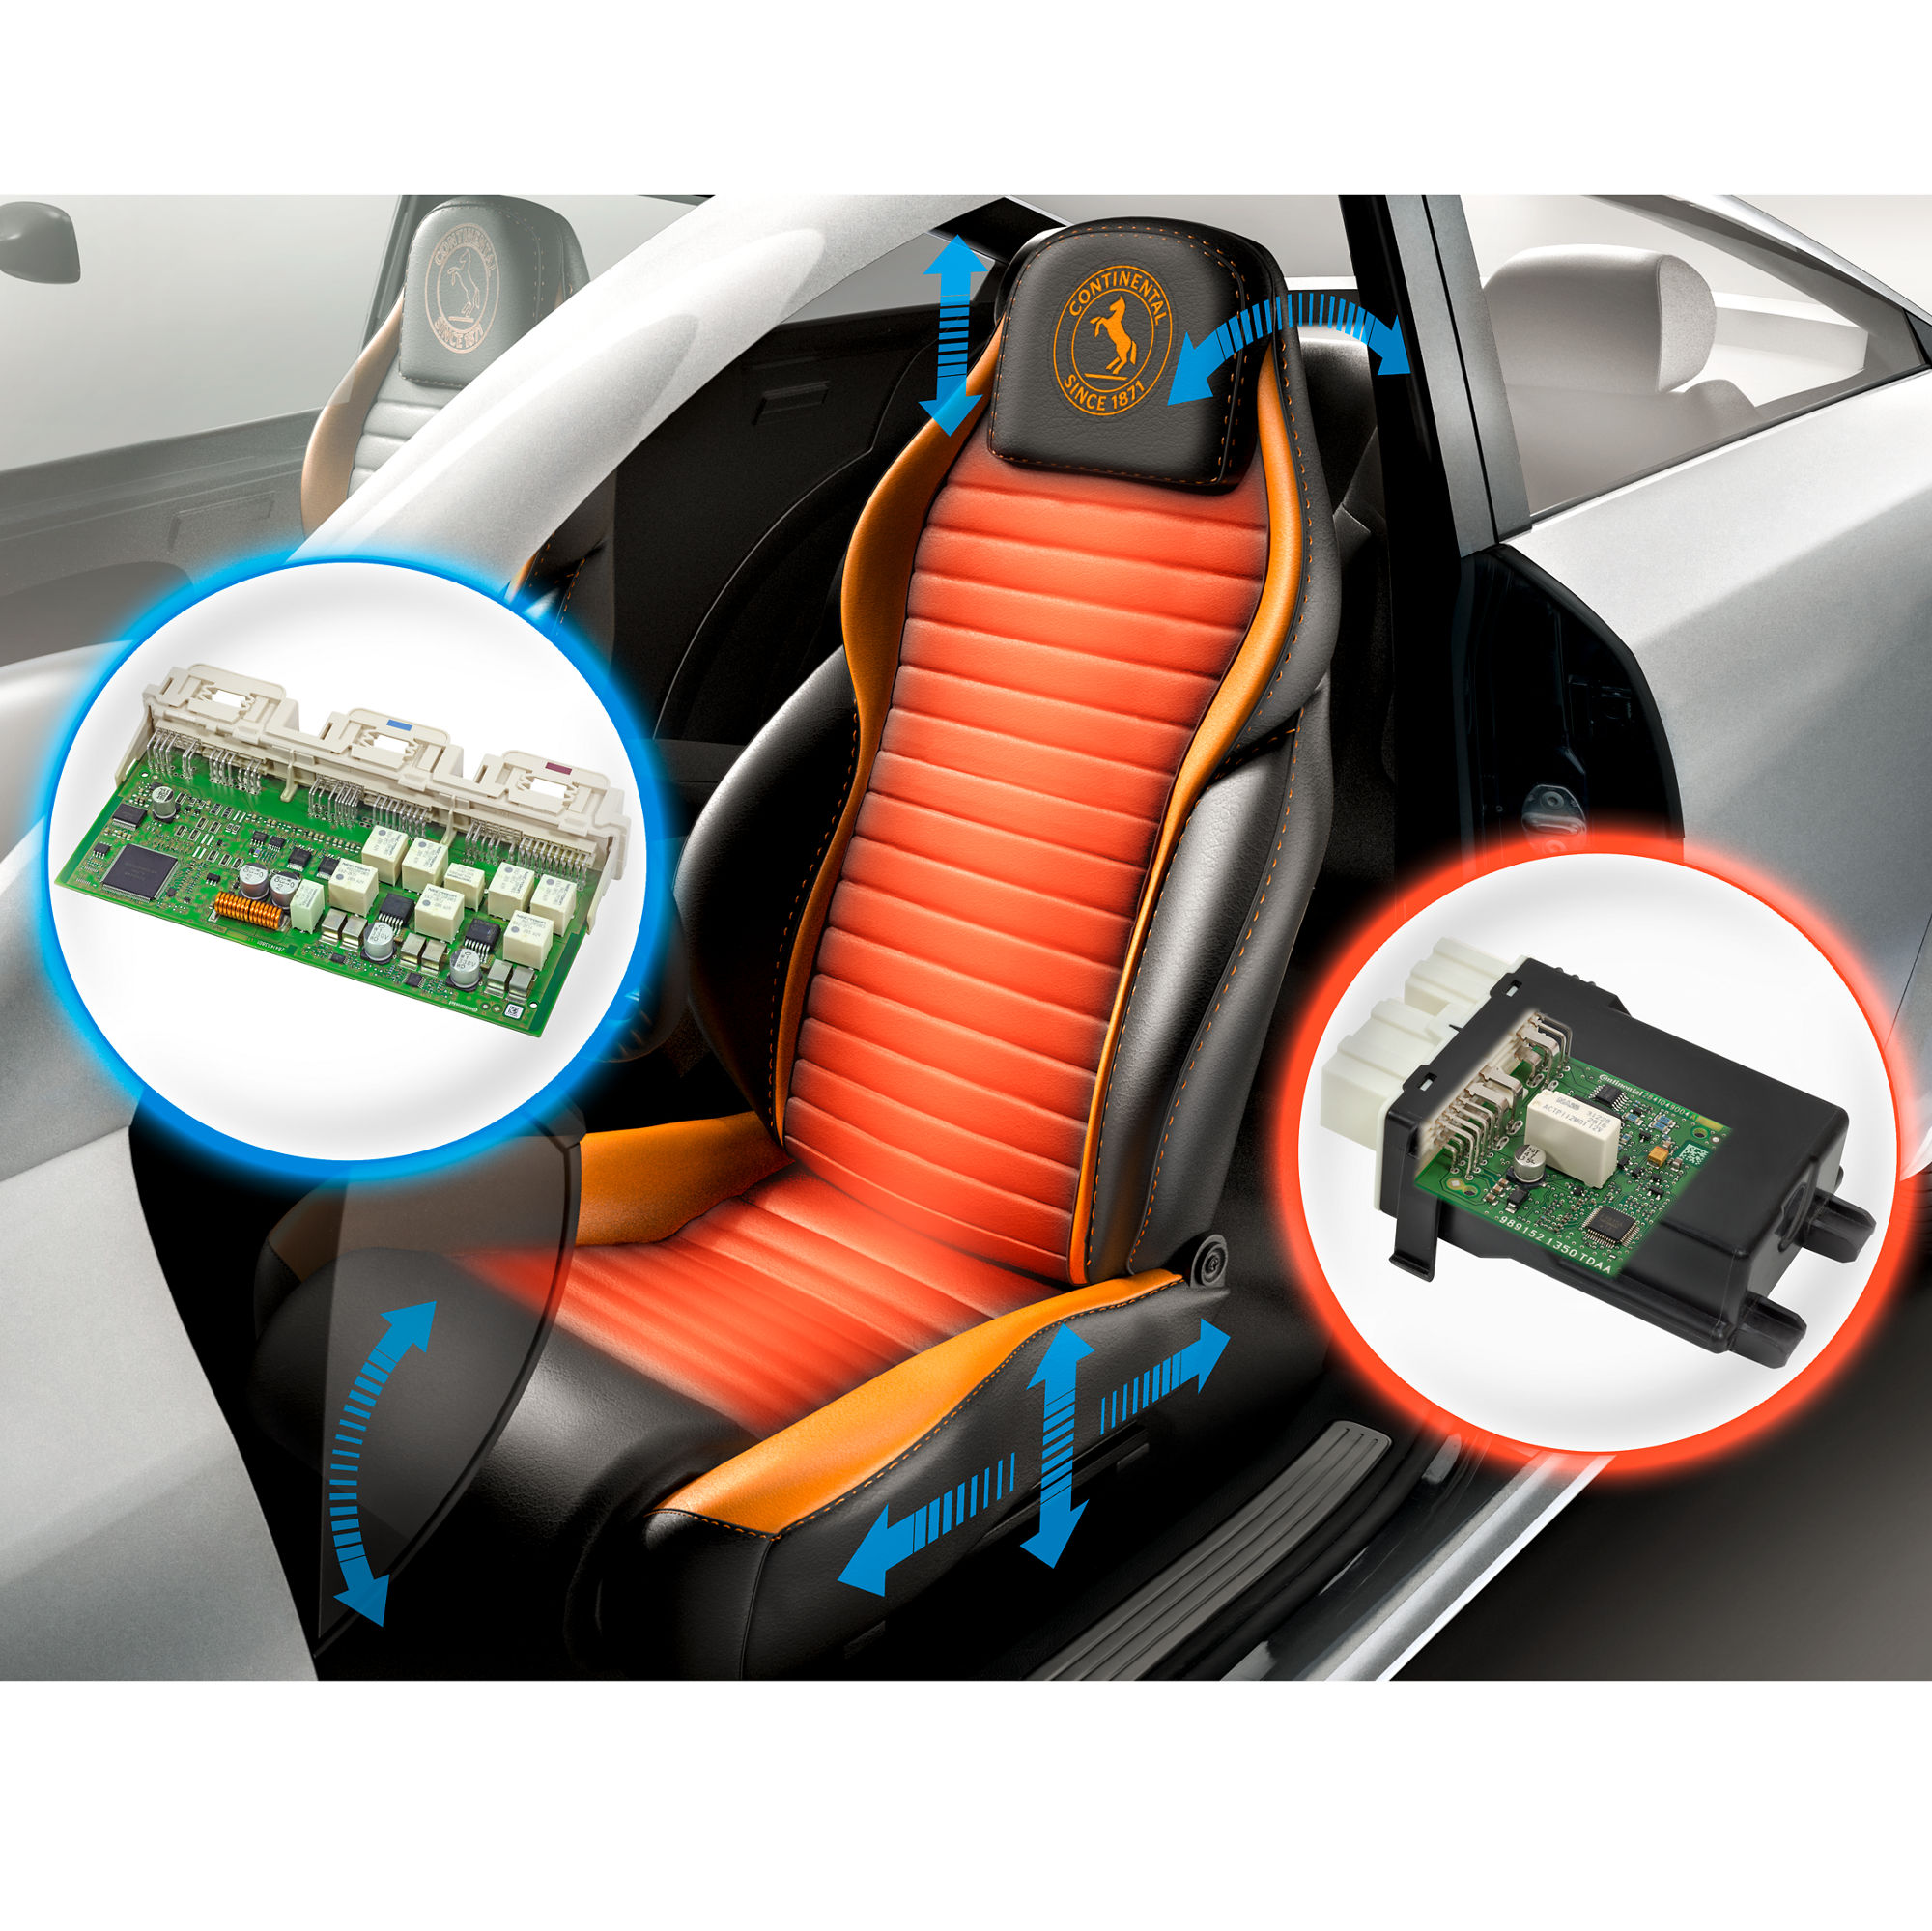 Manual and Memory Seat Adjustment